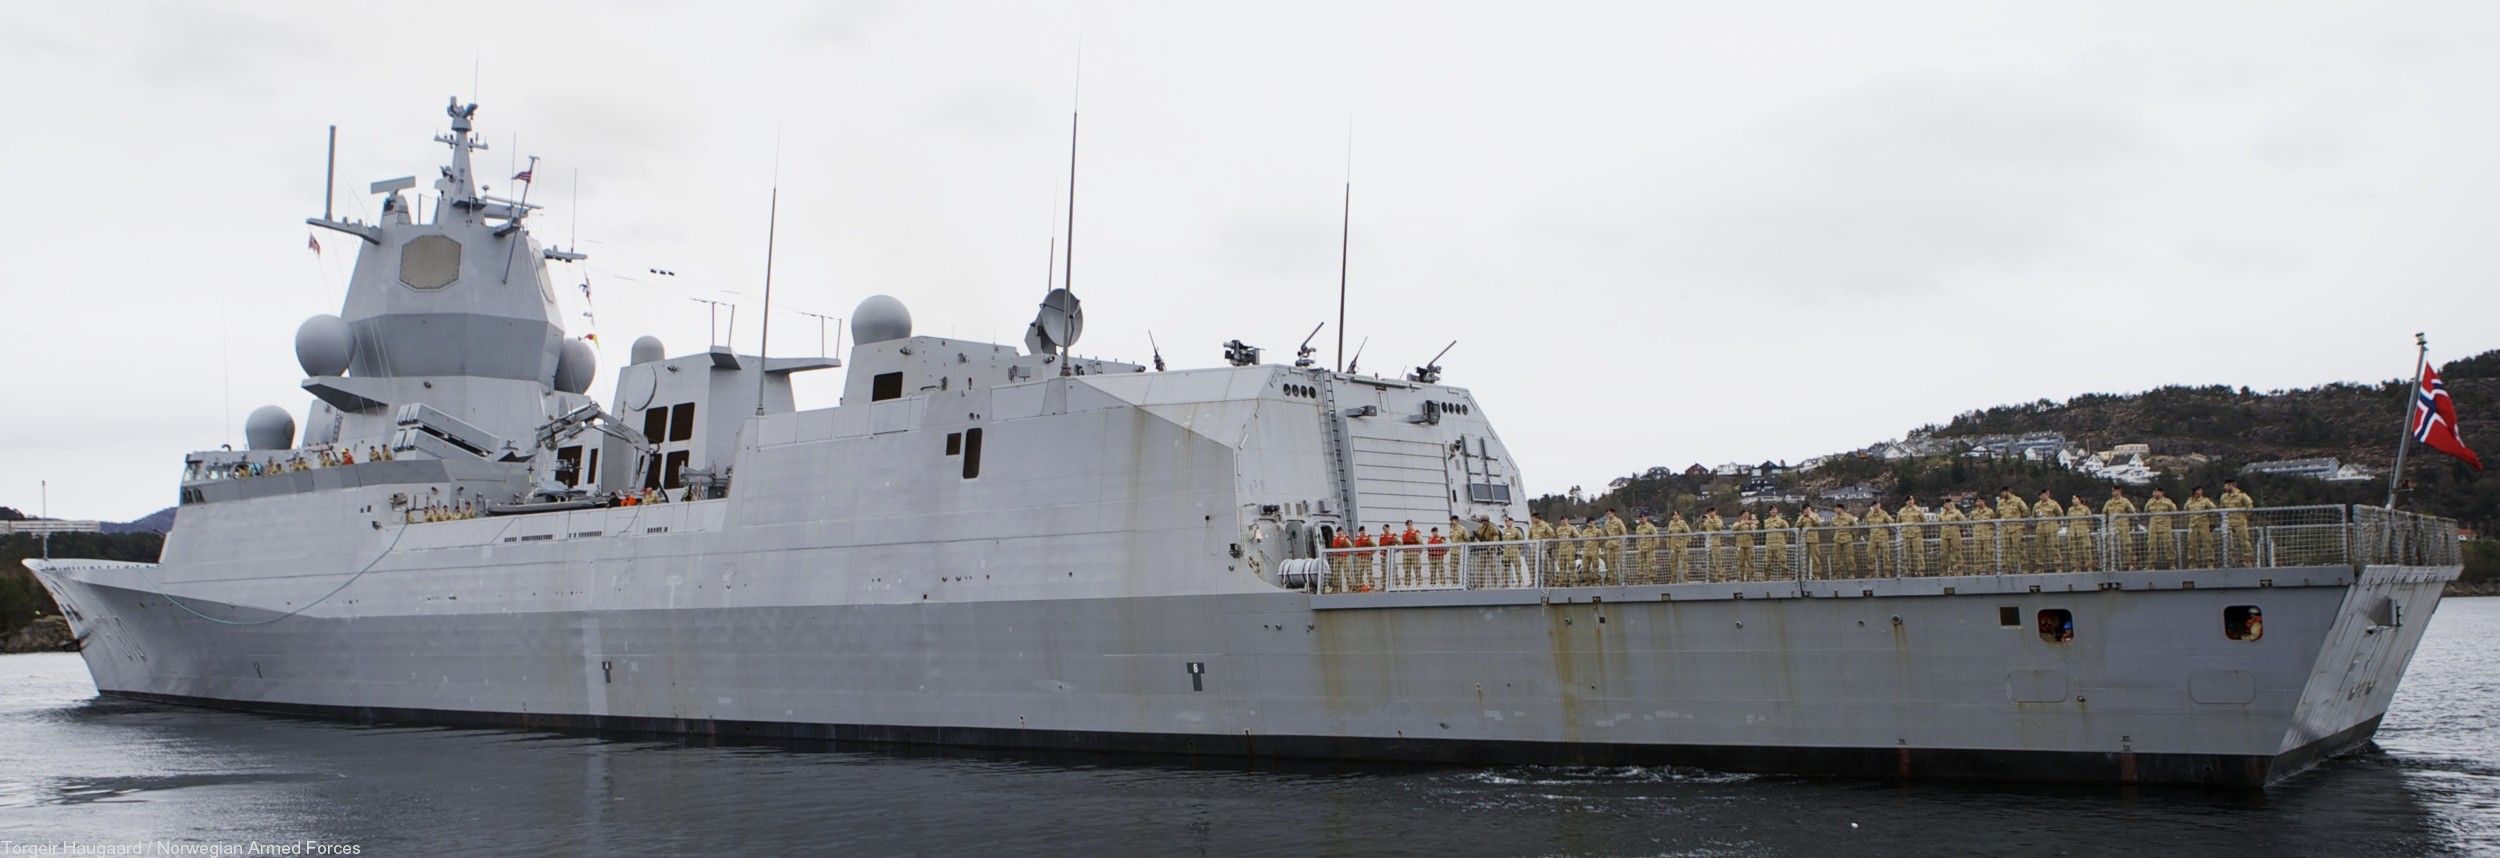 f-310 fridtjof nansen hnoms knm frigate royal norwegian navy sjoforsvaret 24